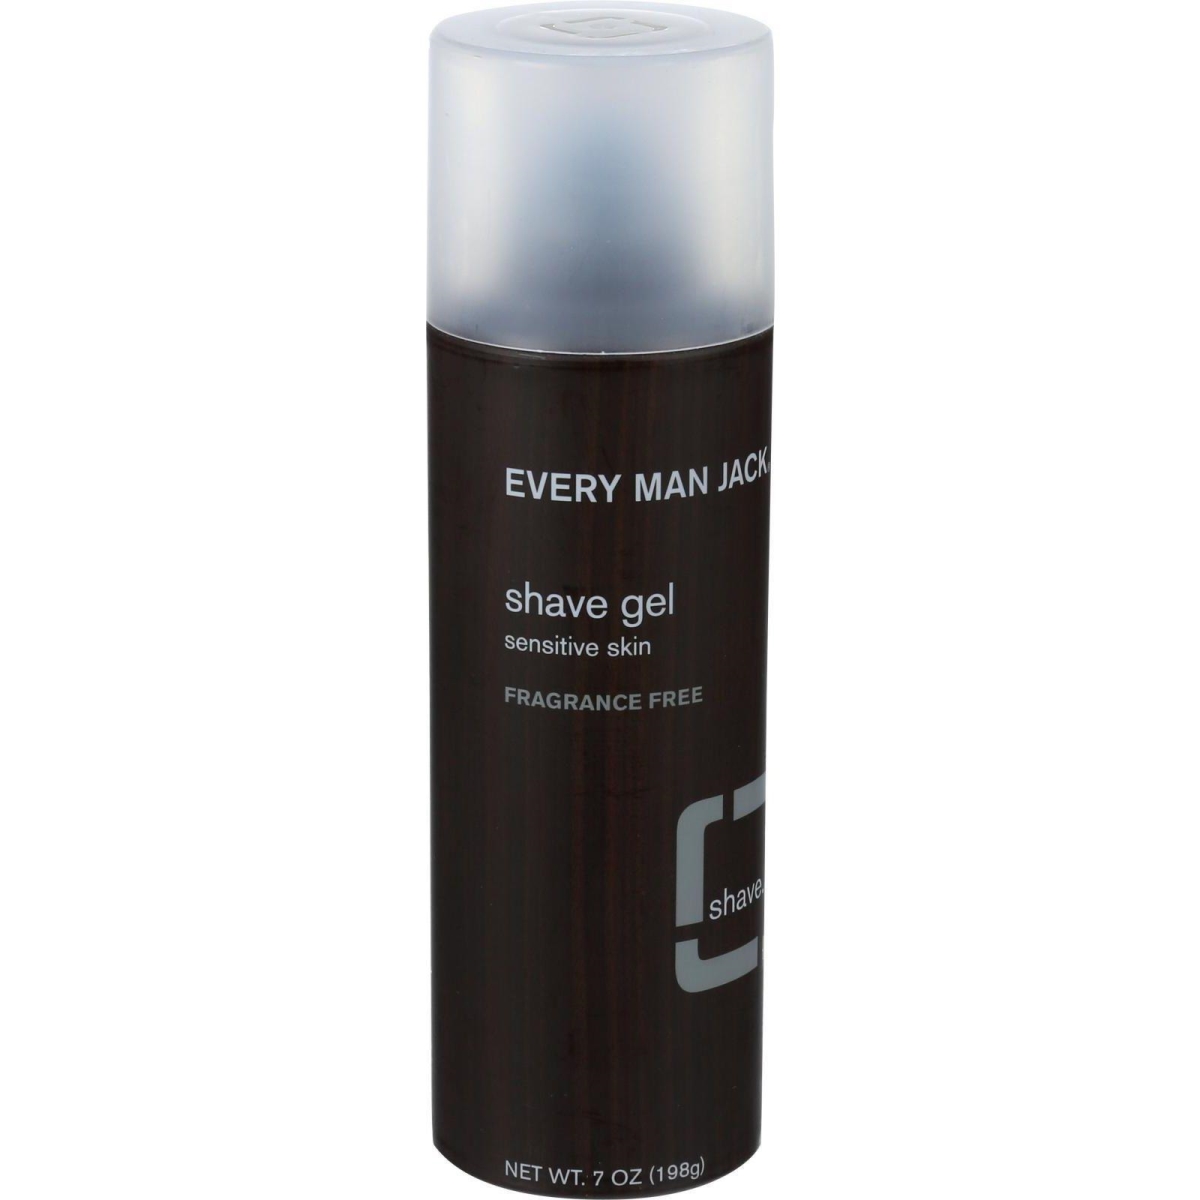 Hg0136853 7 Oz Sensitive Skin Fragrance Free Shave Gel